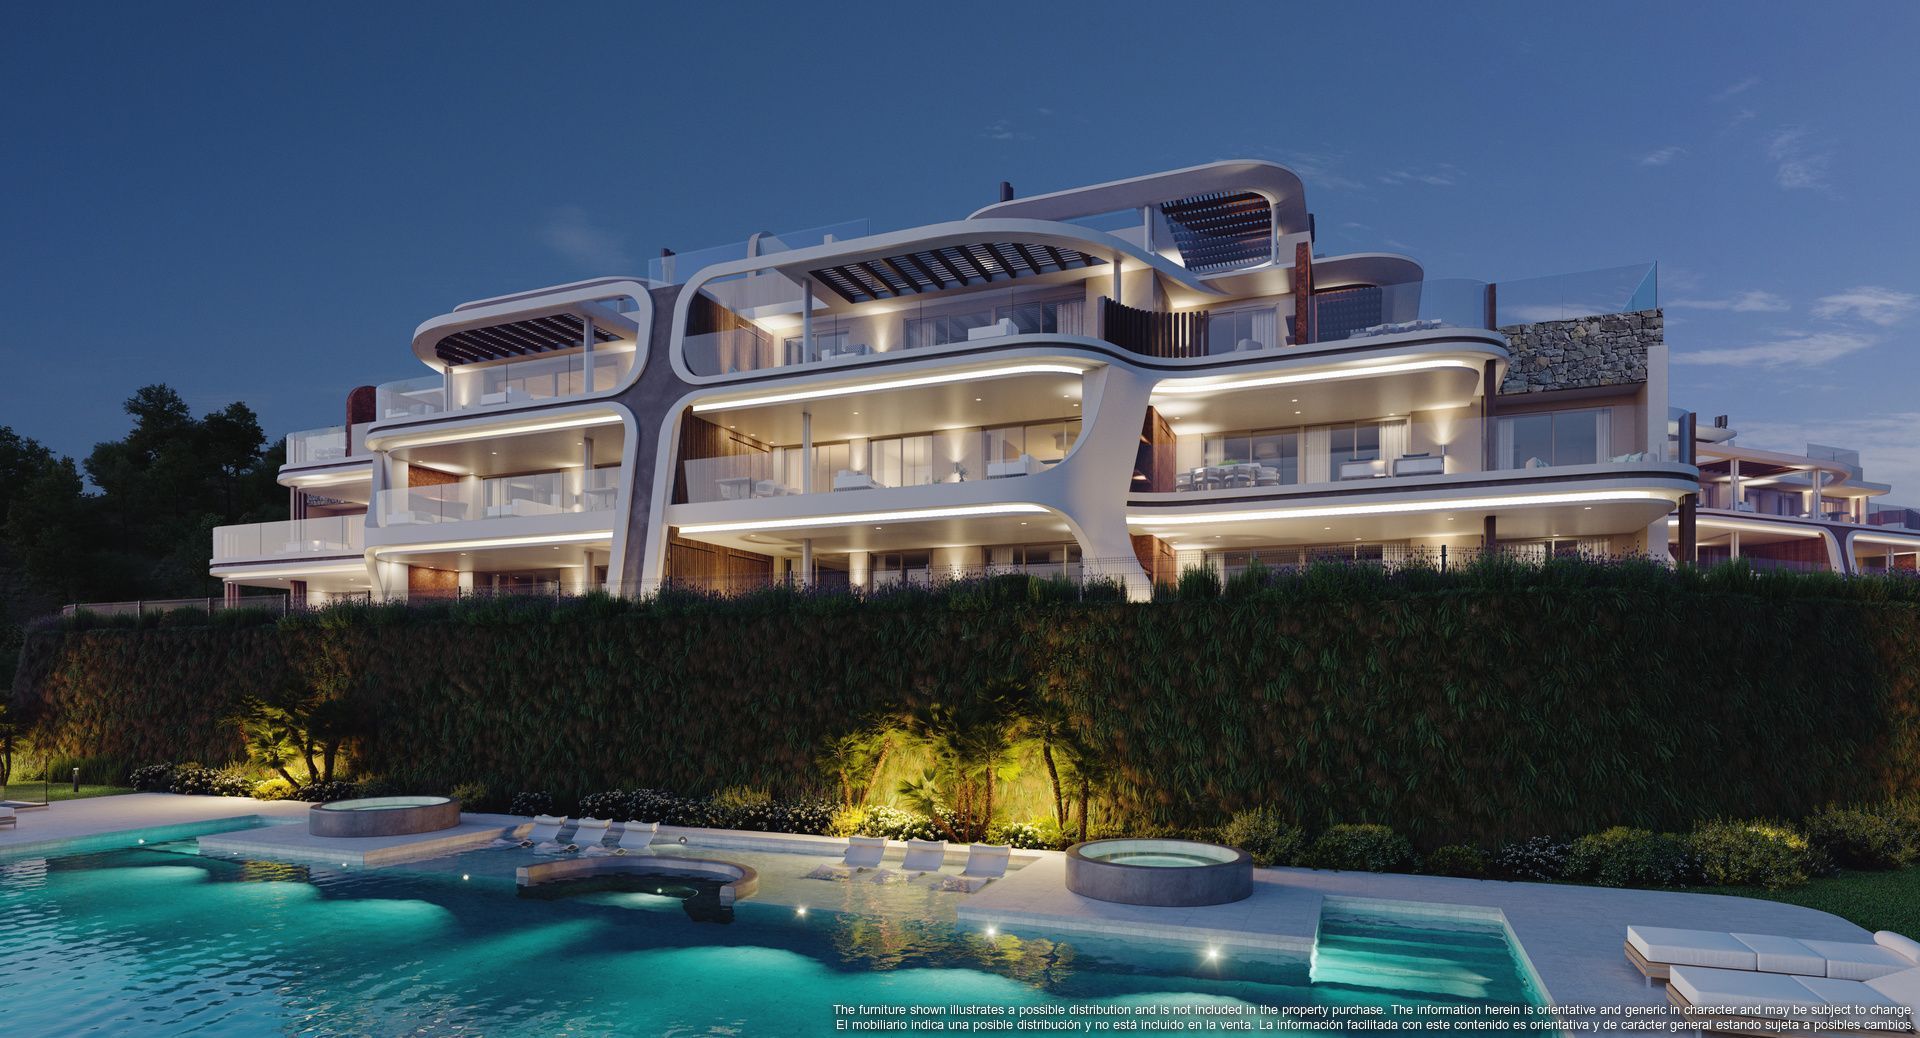 This latest development raises the bar for luxury living in Marbella, Benahavis foto-1